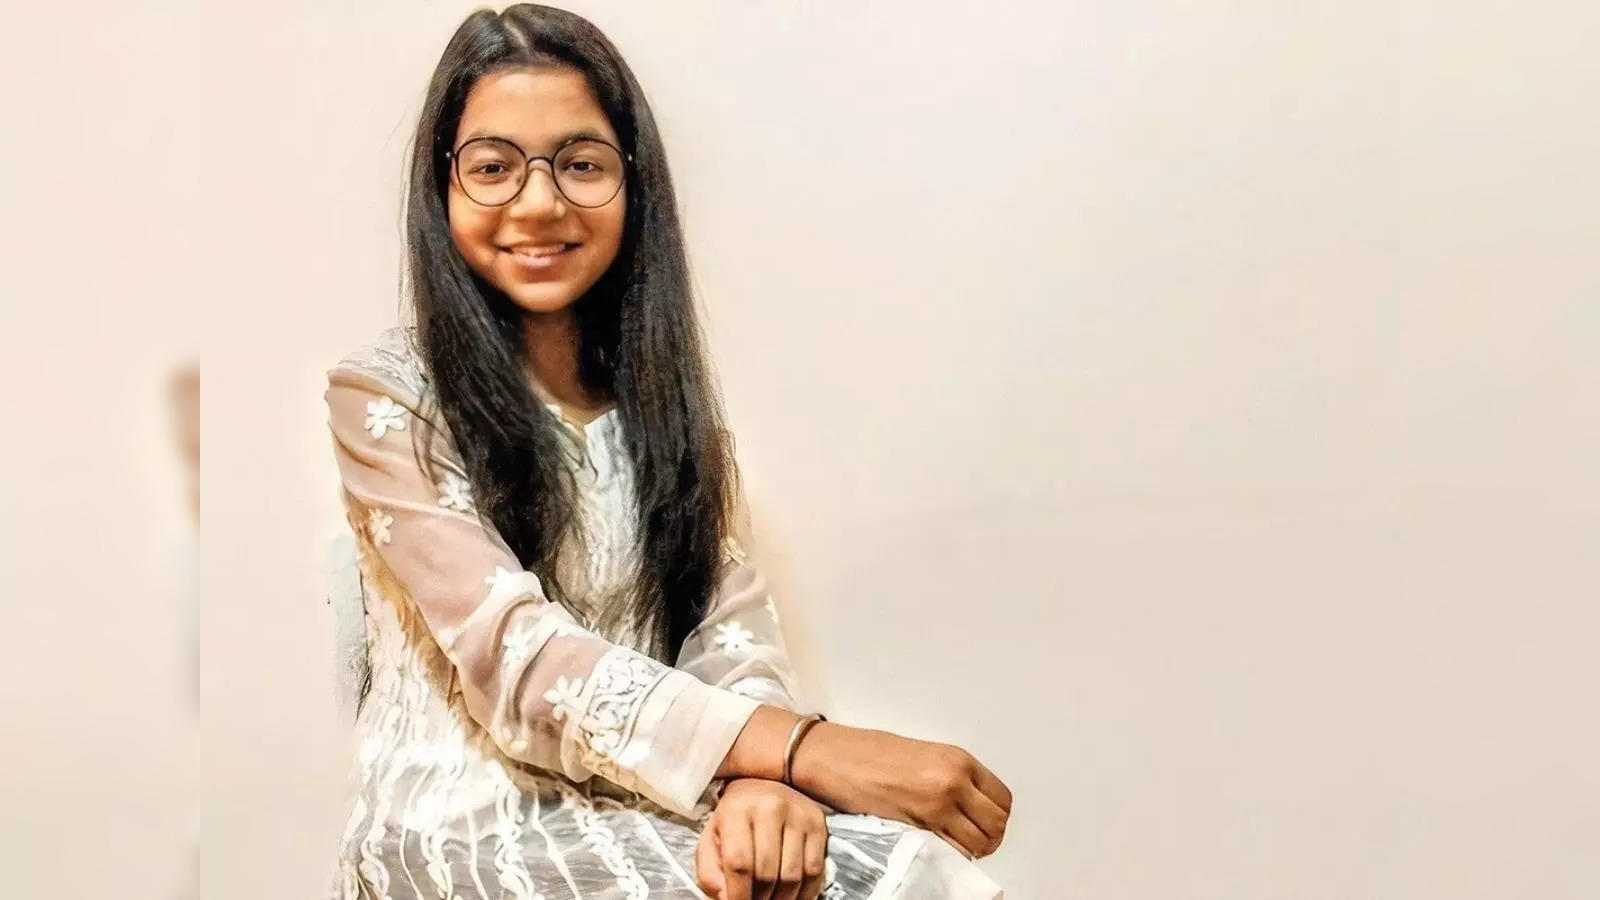 Pranjali Awasthi ai: Miss Richie Rich! At 16, Pranjali Awasthi has built a  Rs 100-cr AI startup - The Economic Times